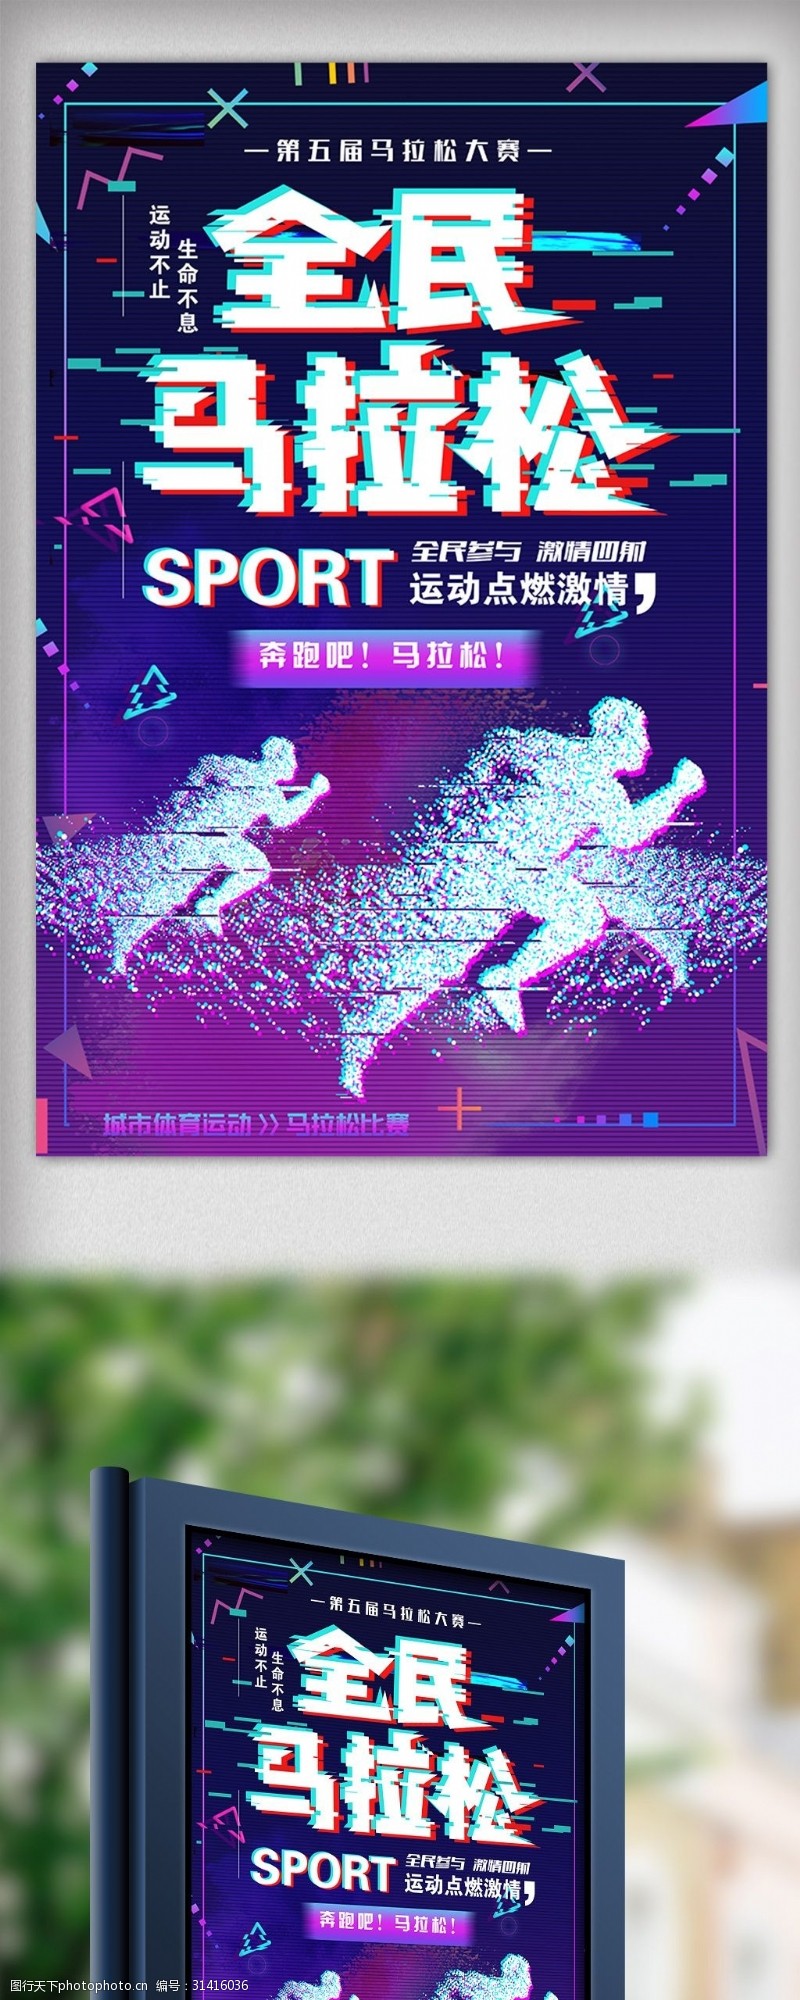 淘宝海报免费下载抖音故障马拉松比赛体育海报设计